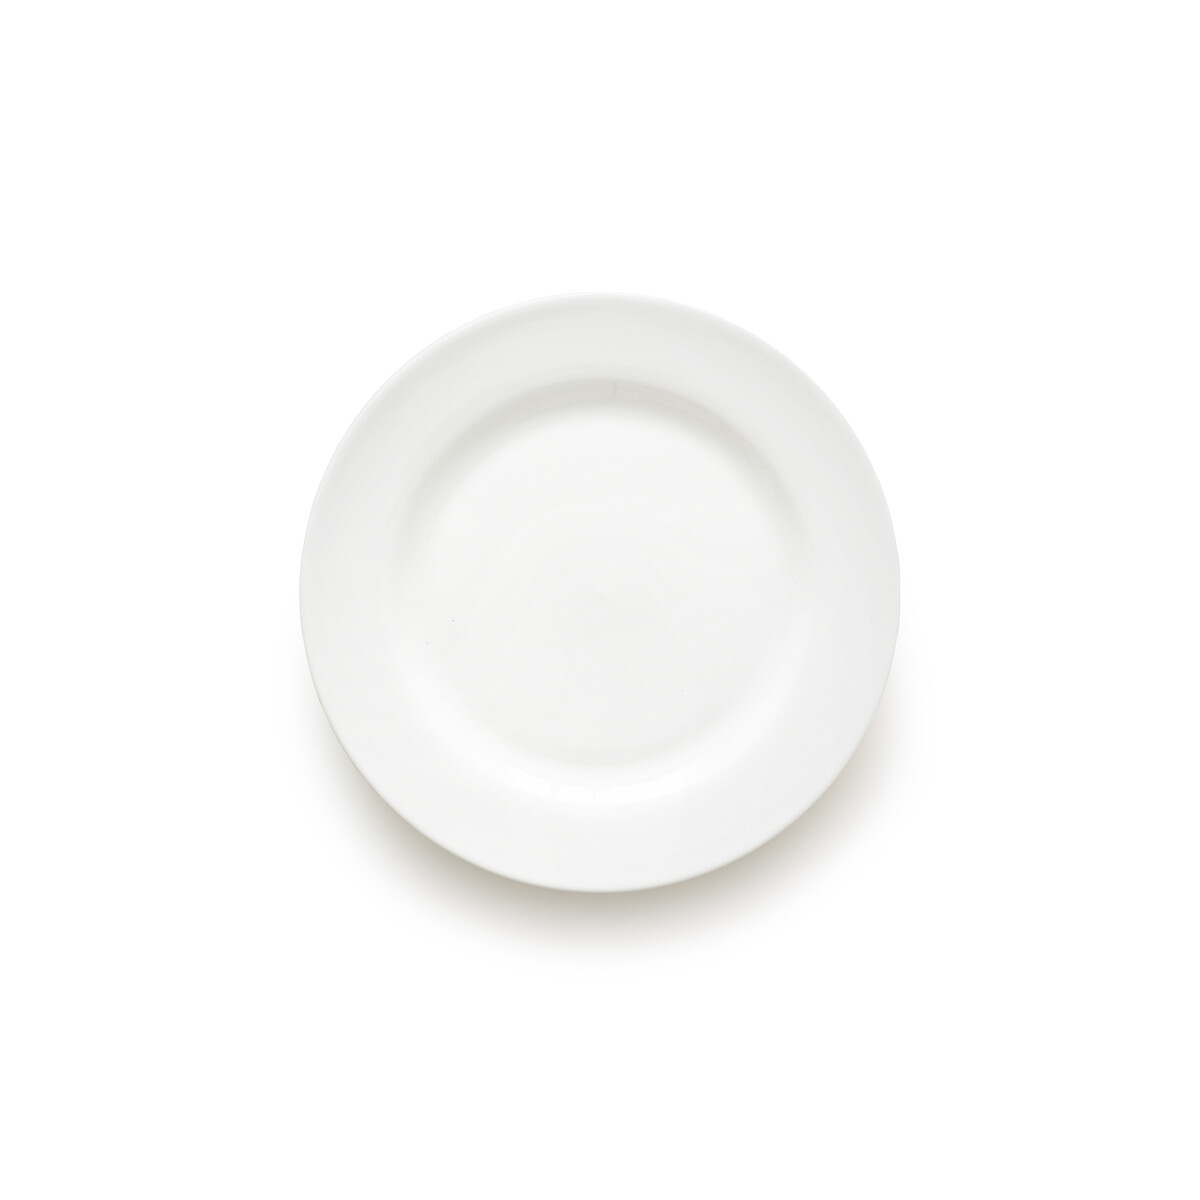 Комплект из четырех десертных тарелок из фарфора Ginny единый размер белый комплект из четырех керамических десертных тарелок broca единый размер бежевый